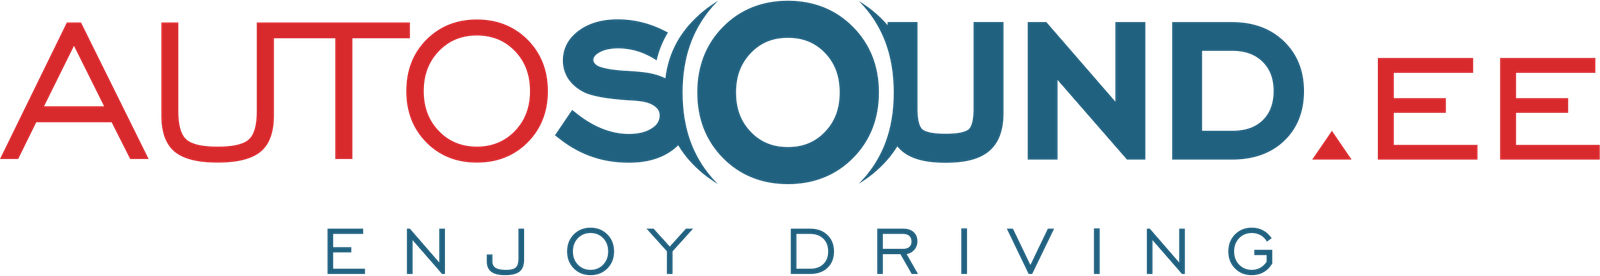 Autosound Logo